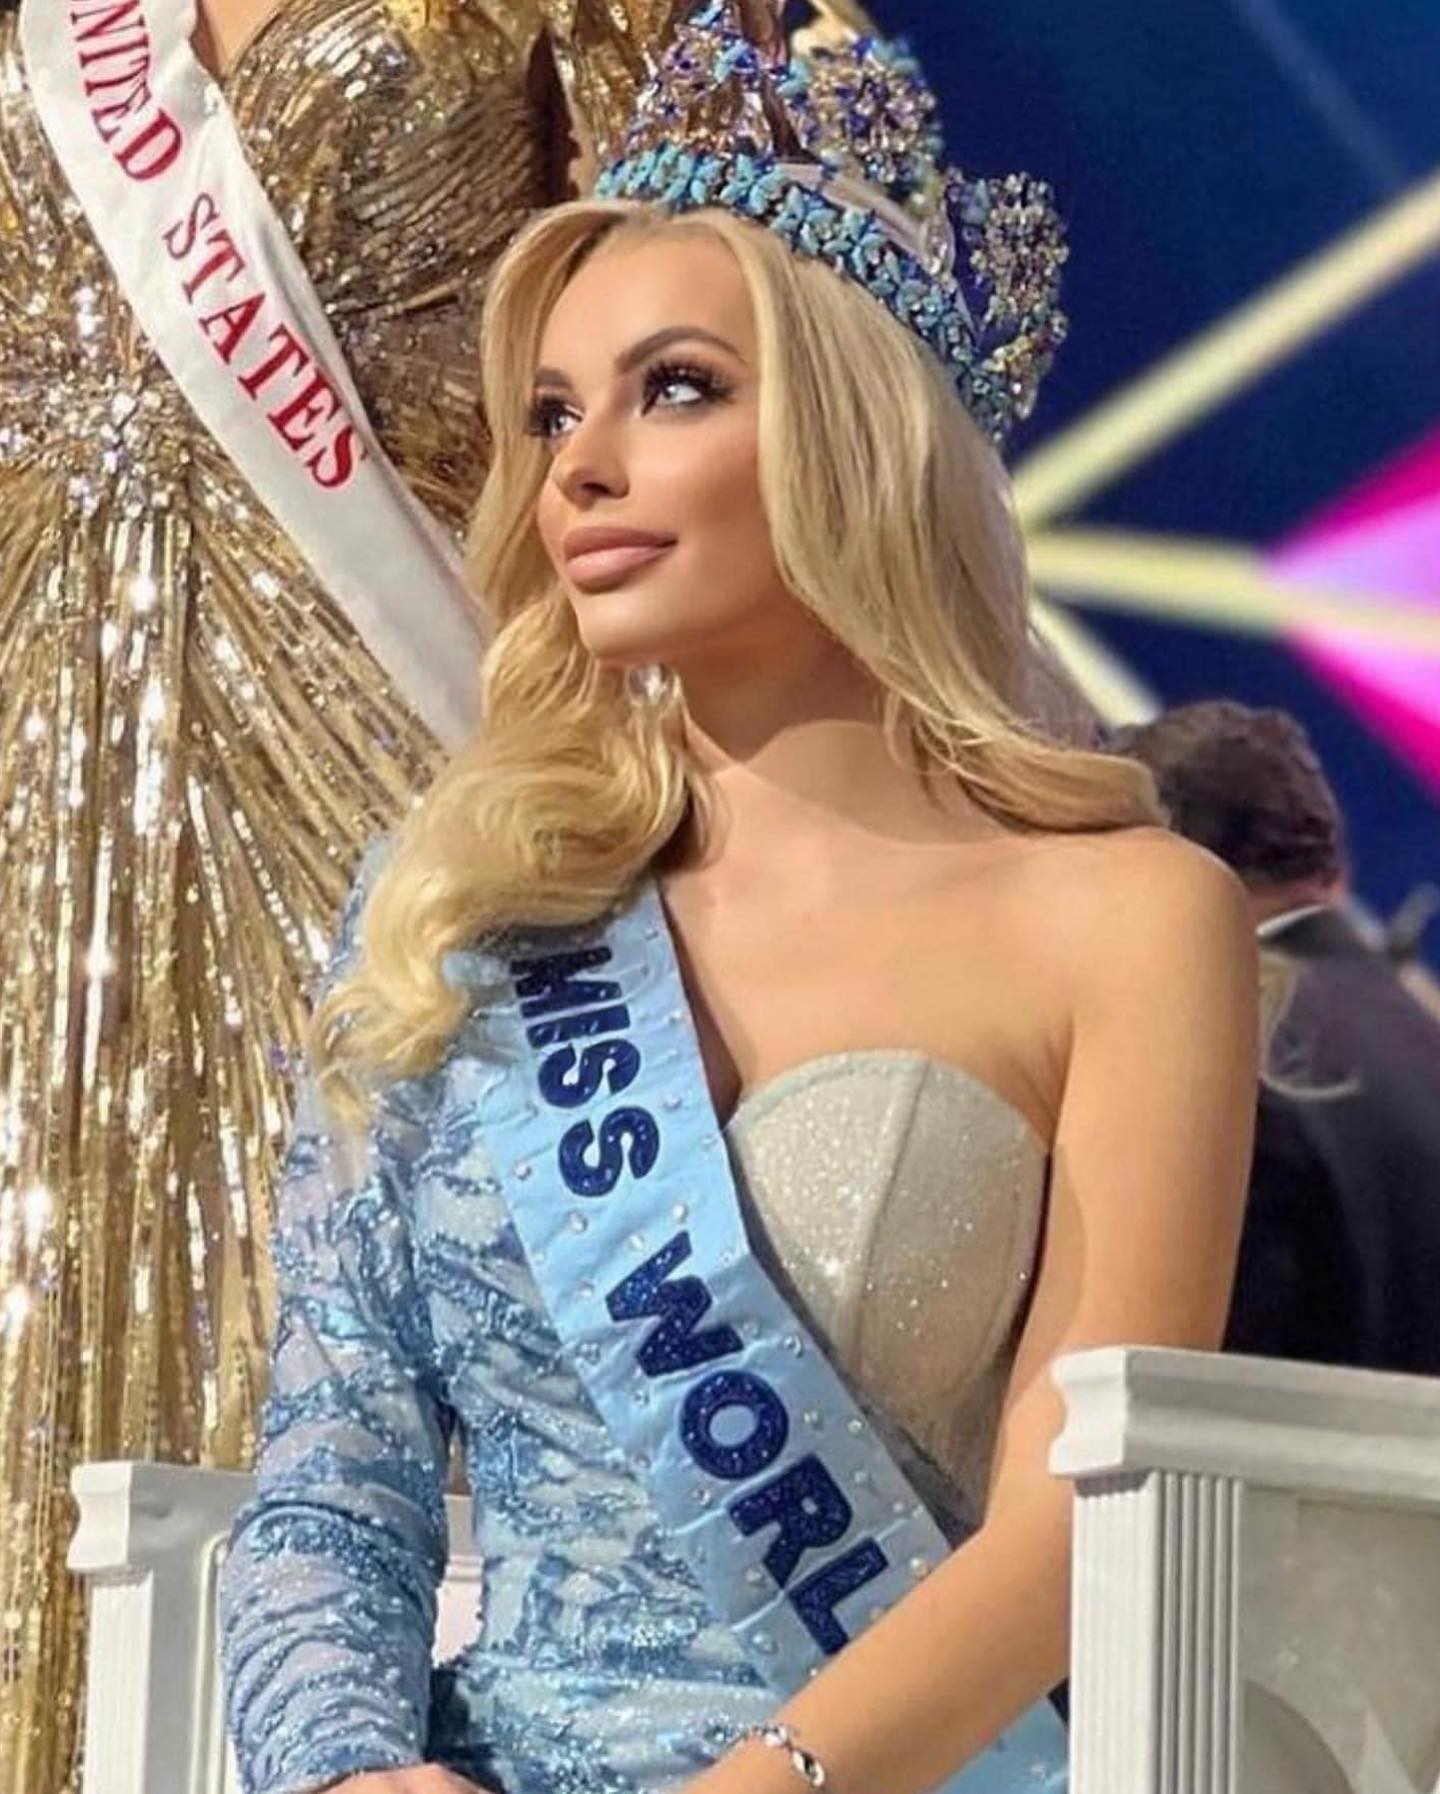 karolina bielawska, miss world 2021. 27166413